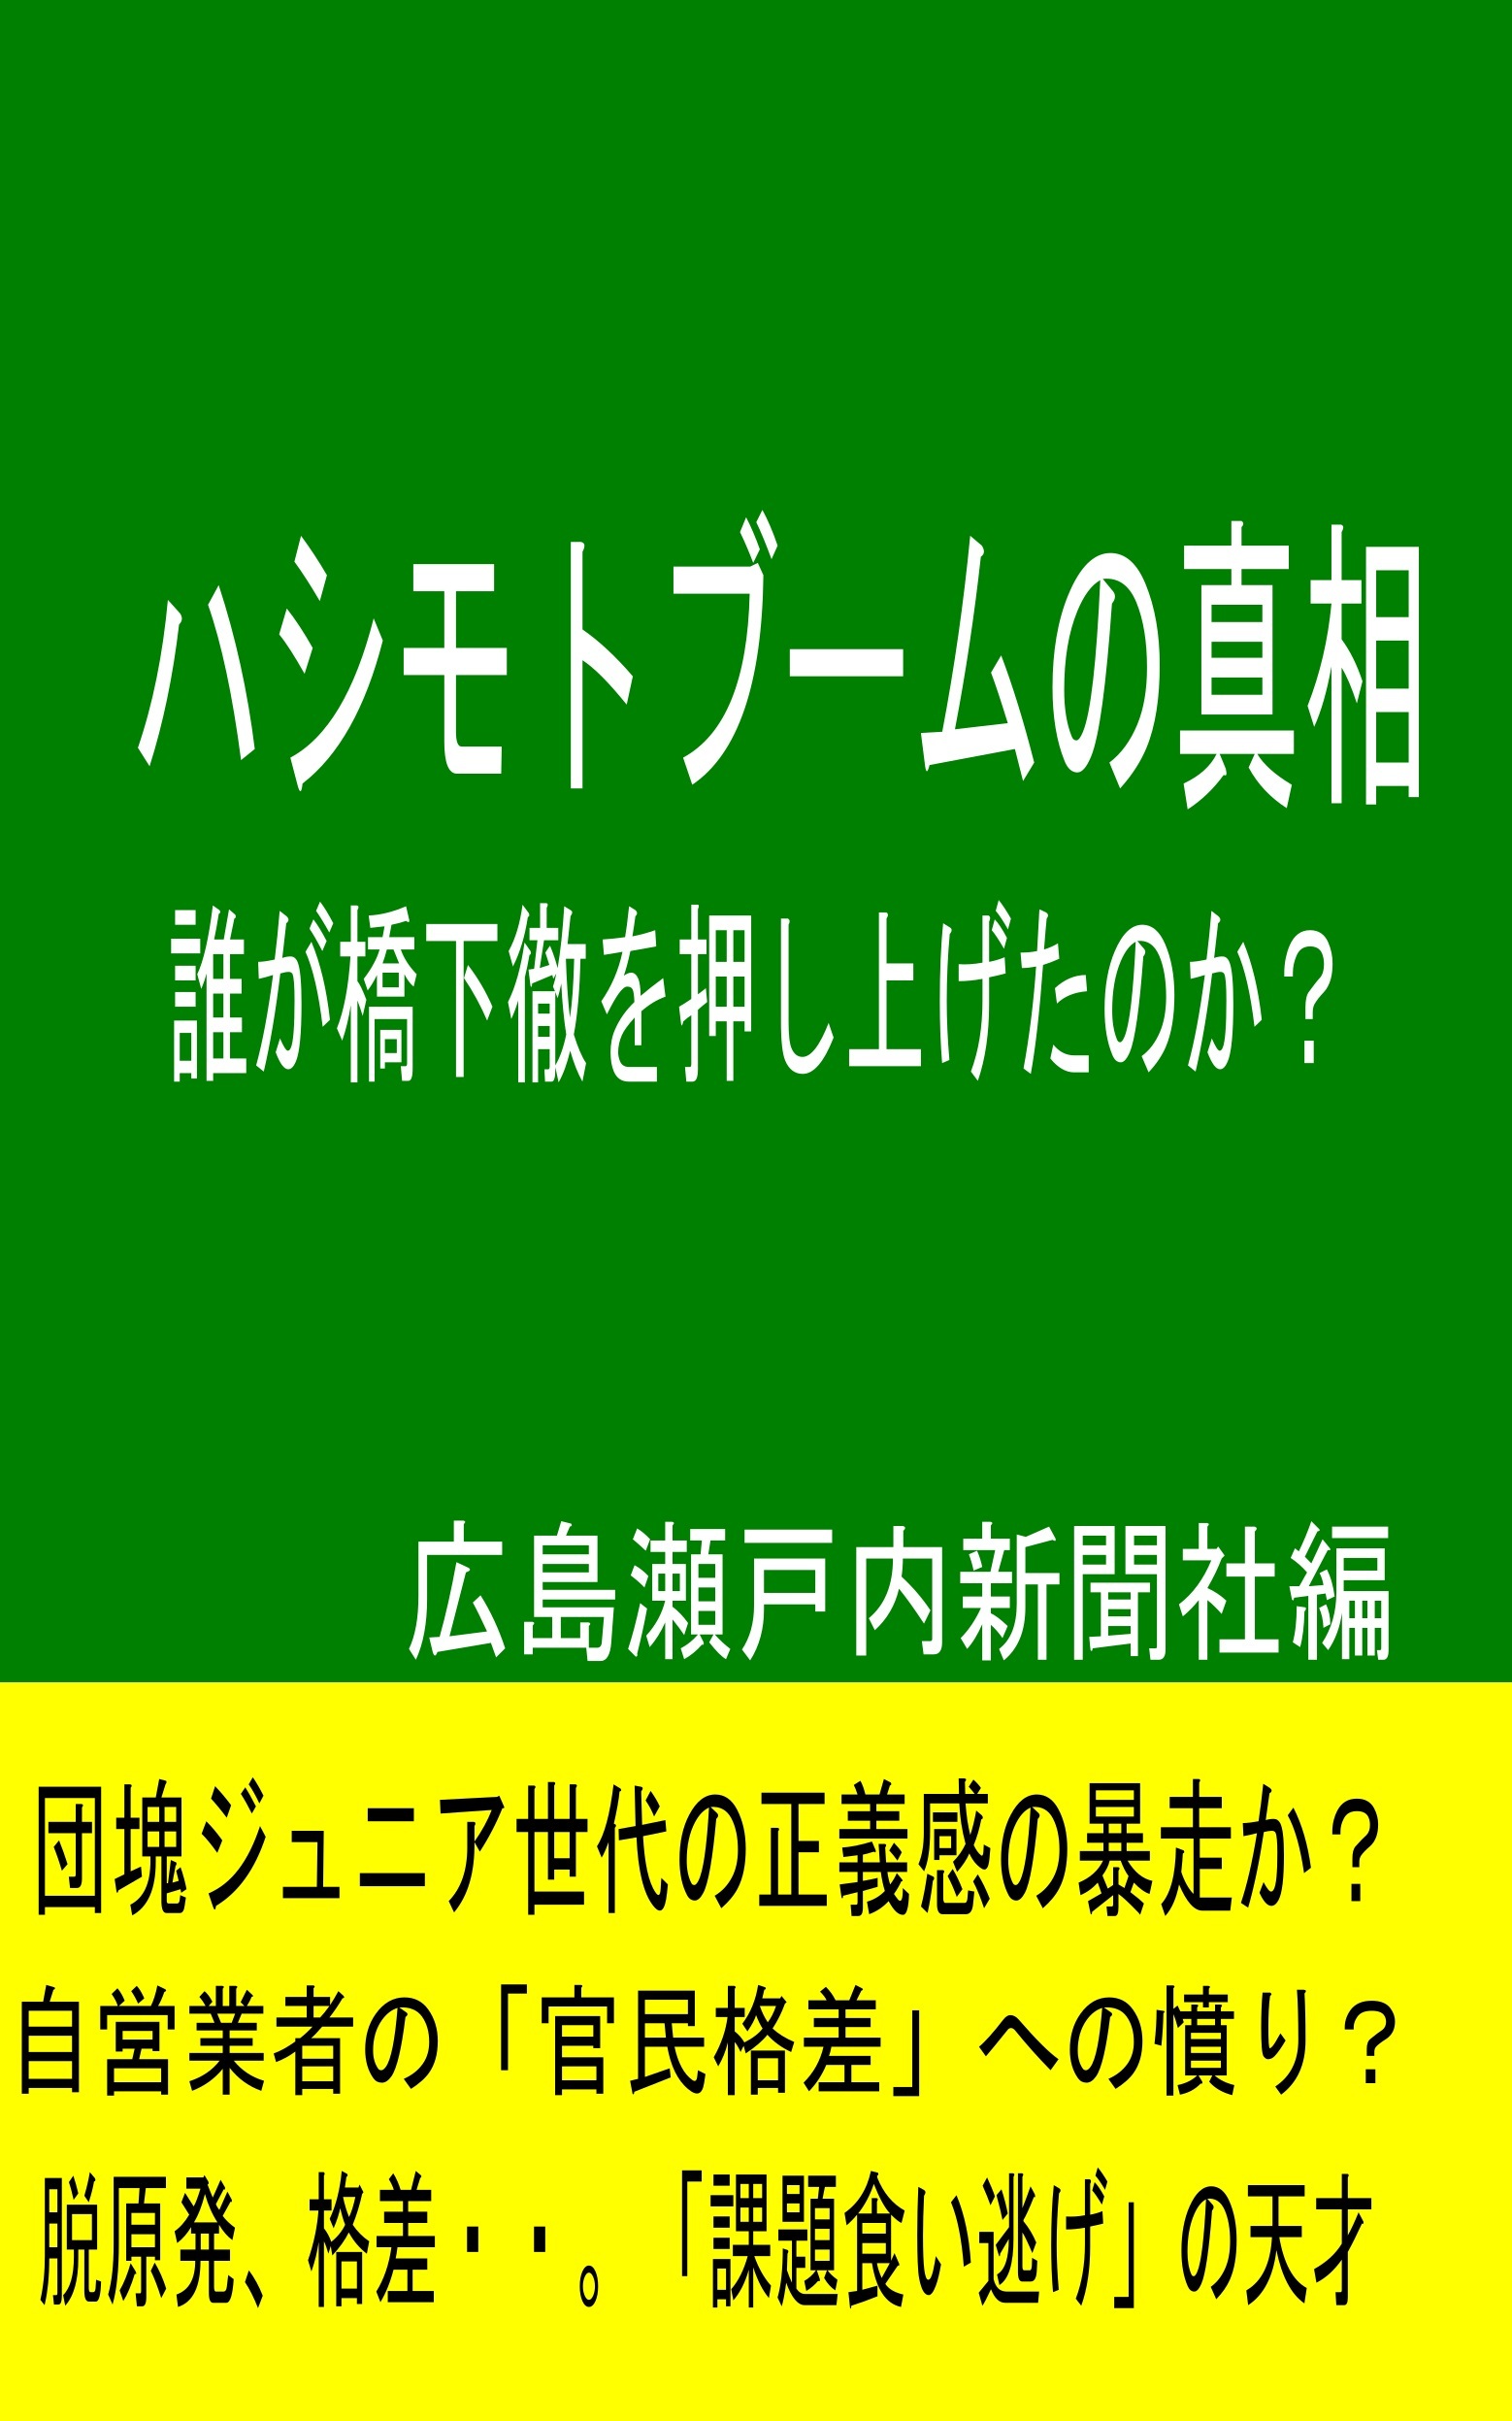 もし、「橋下徹を大阪国皇帝にする」という住民投票があったら・・・_e0094315_06452038.jpg